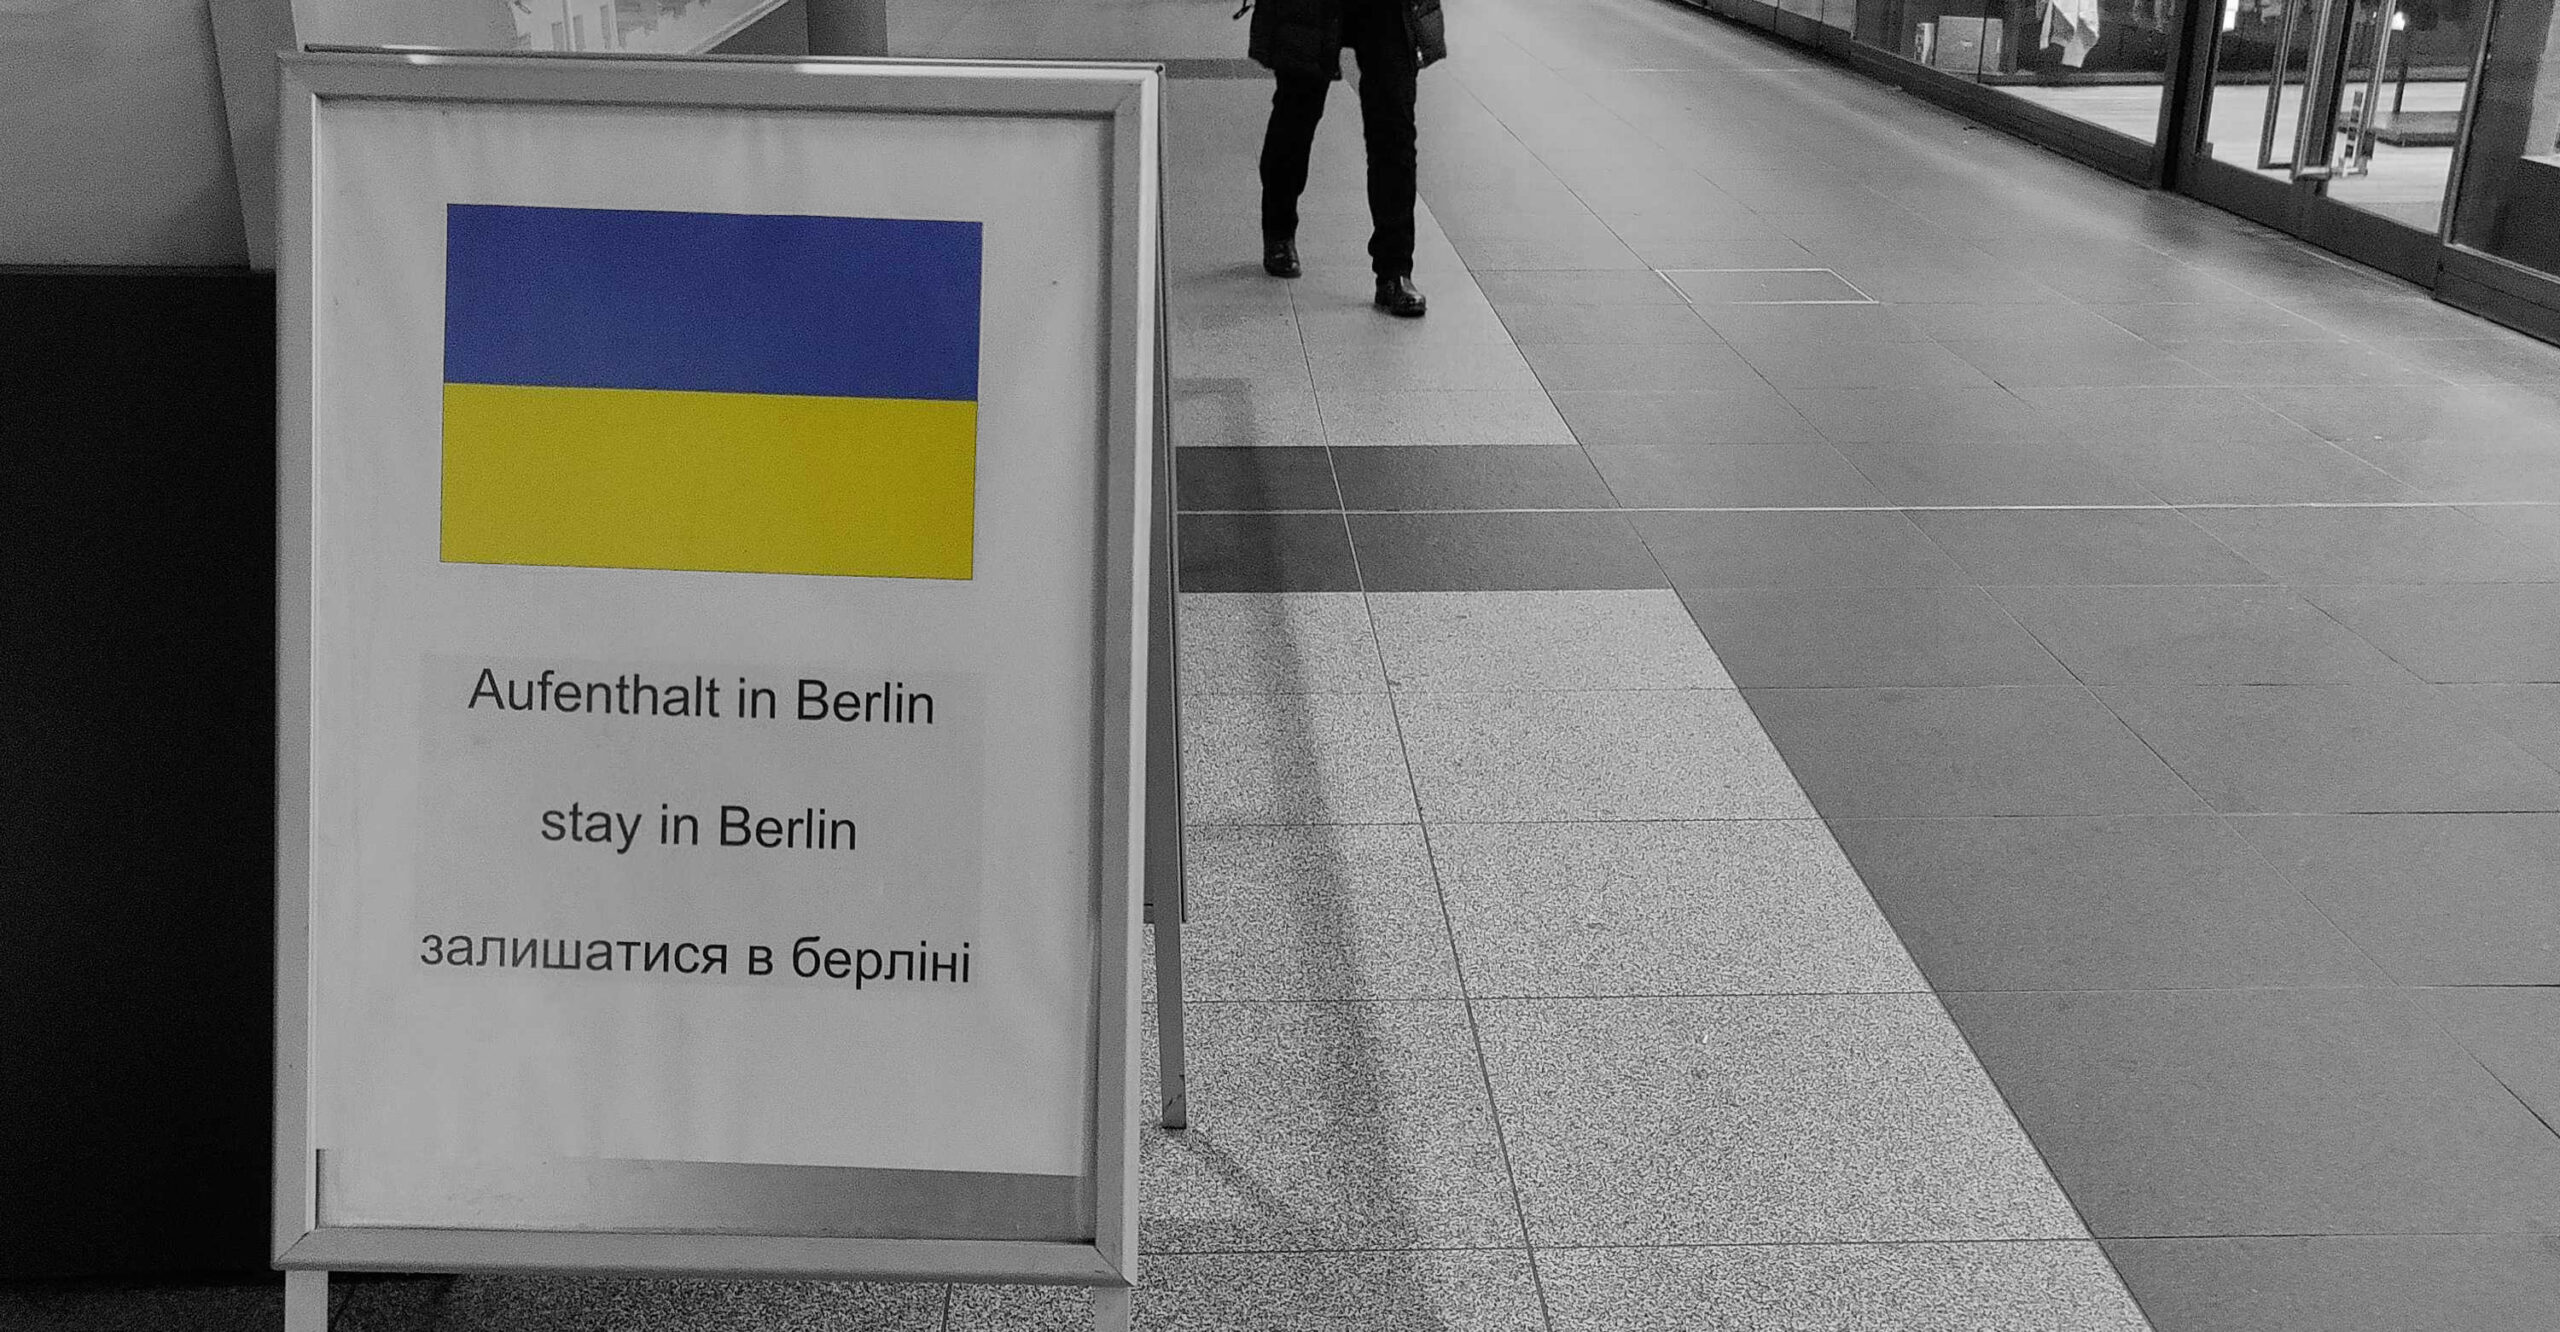 Refugiados llegan a la estación central de Berlín Hauptbahnhof Lado|B|erlin.